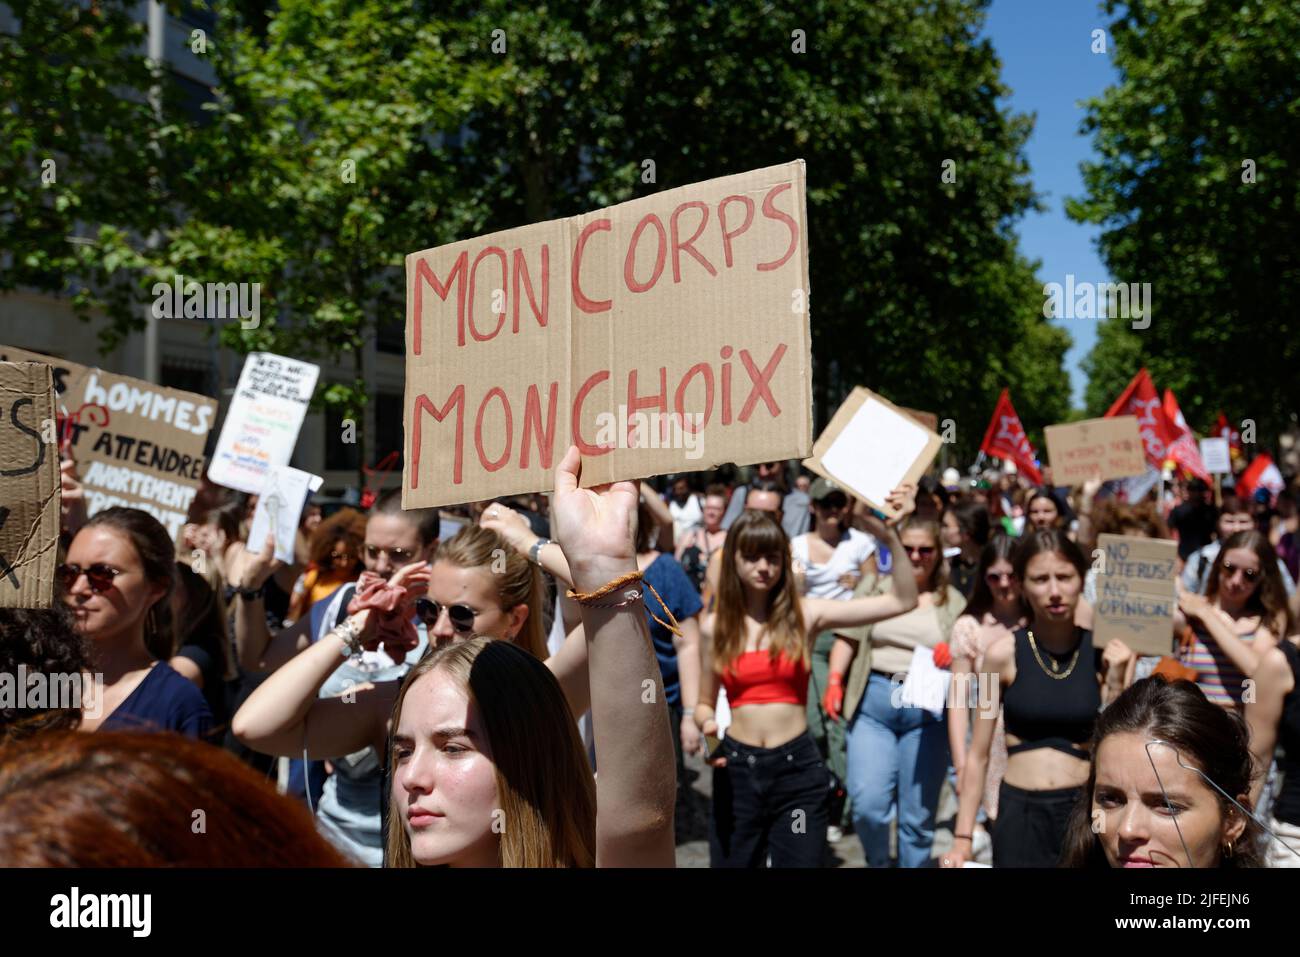 Gran movilización para mantener el derecho al aborto En Francia, varios diputados (D.Simmonet/S.Rousseau/F.Roussel) vinieron a apoyar la causa de las feministas. Foto de stock